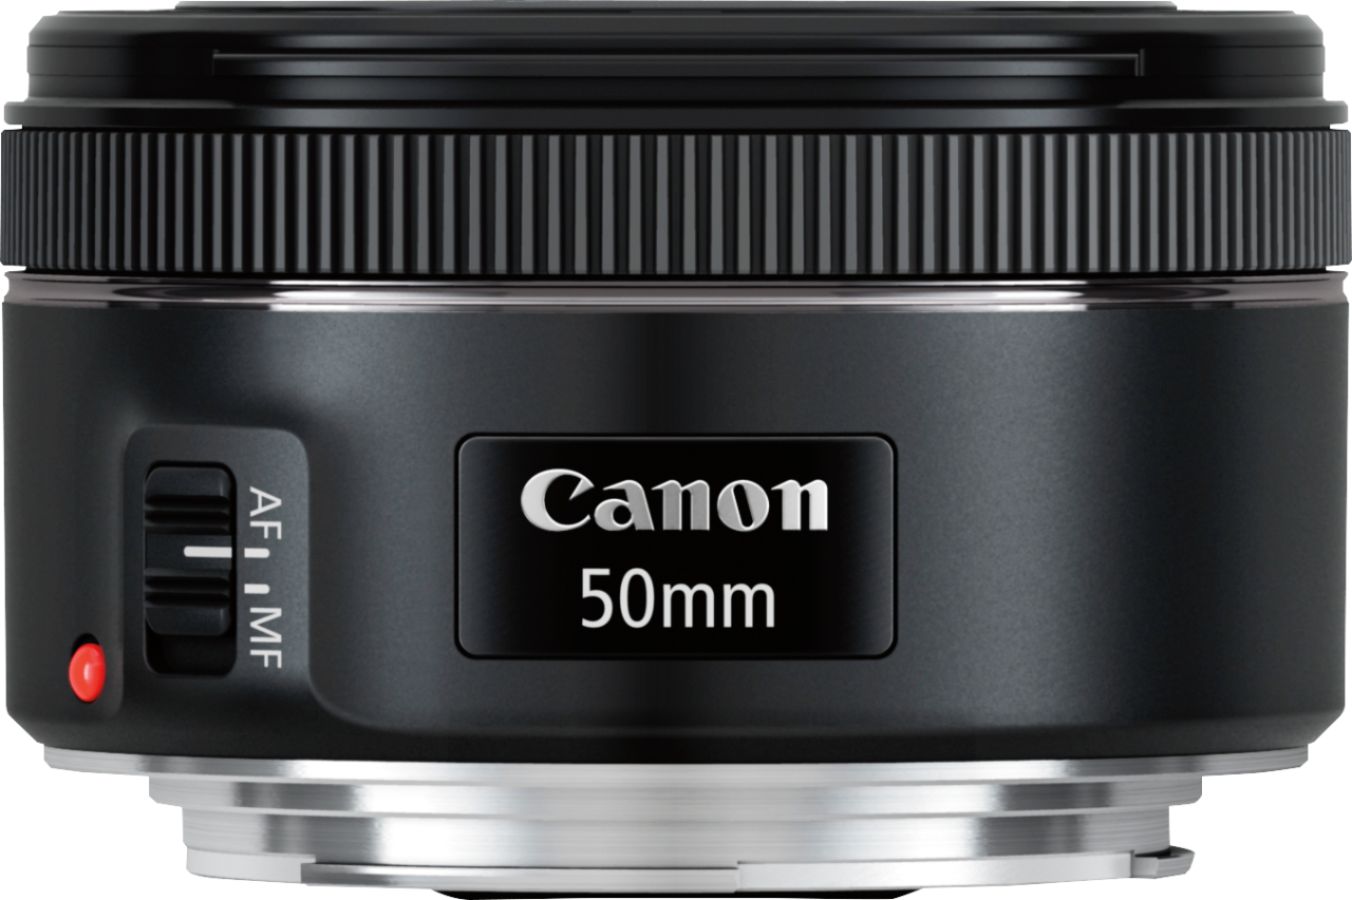 Canon EF50mm F1.8 Best EOS Black Standard Prime STM DSLR - 0570C002 for Buy Cameras Lens